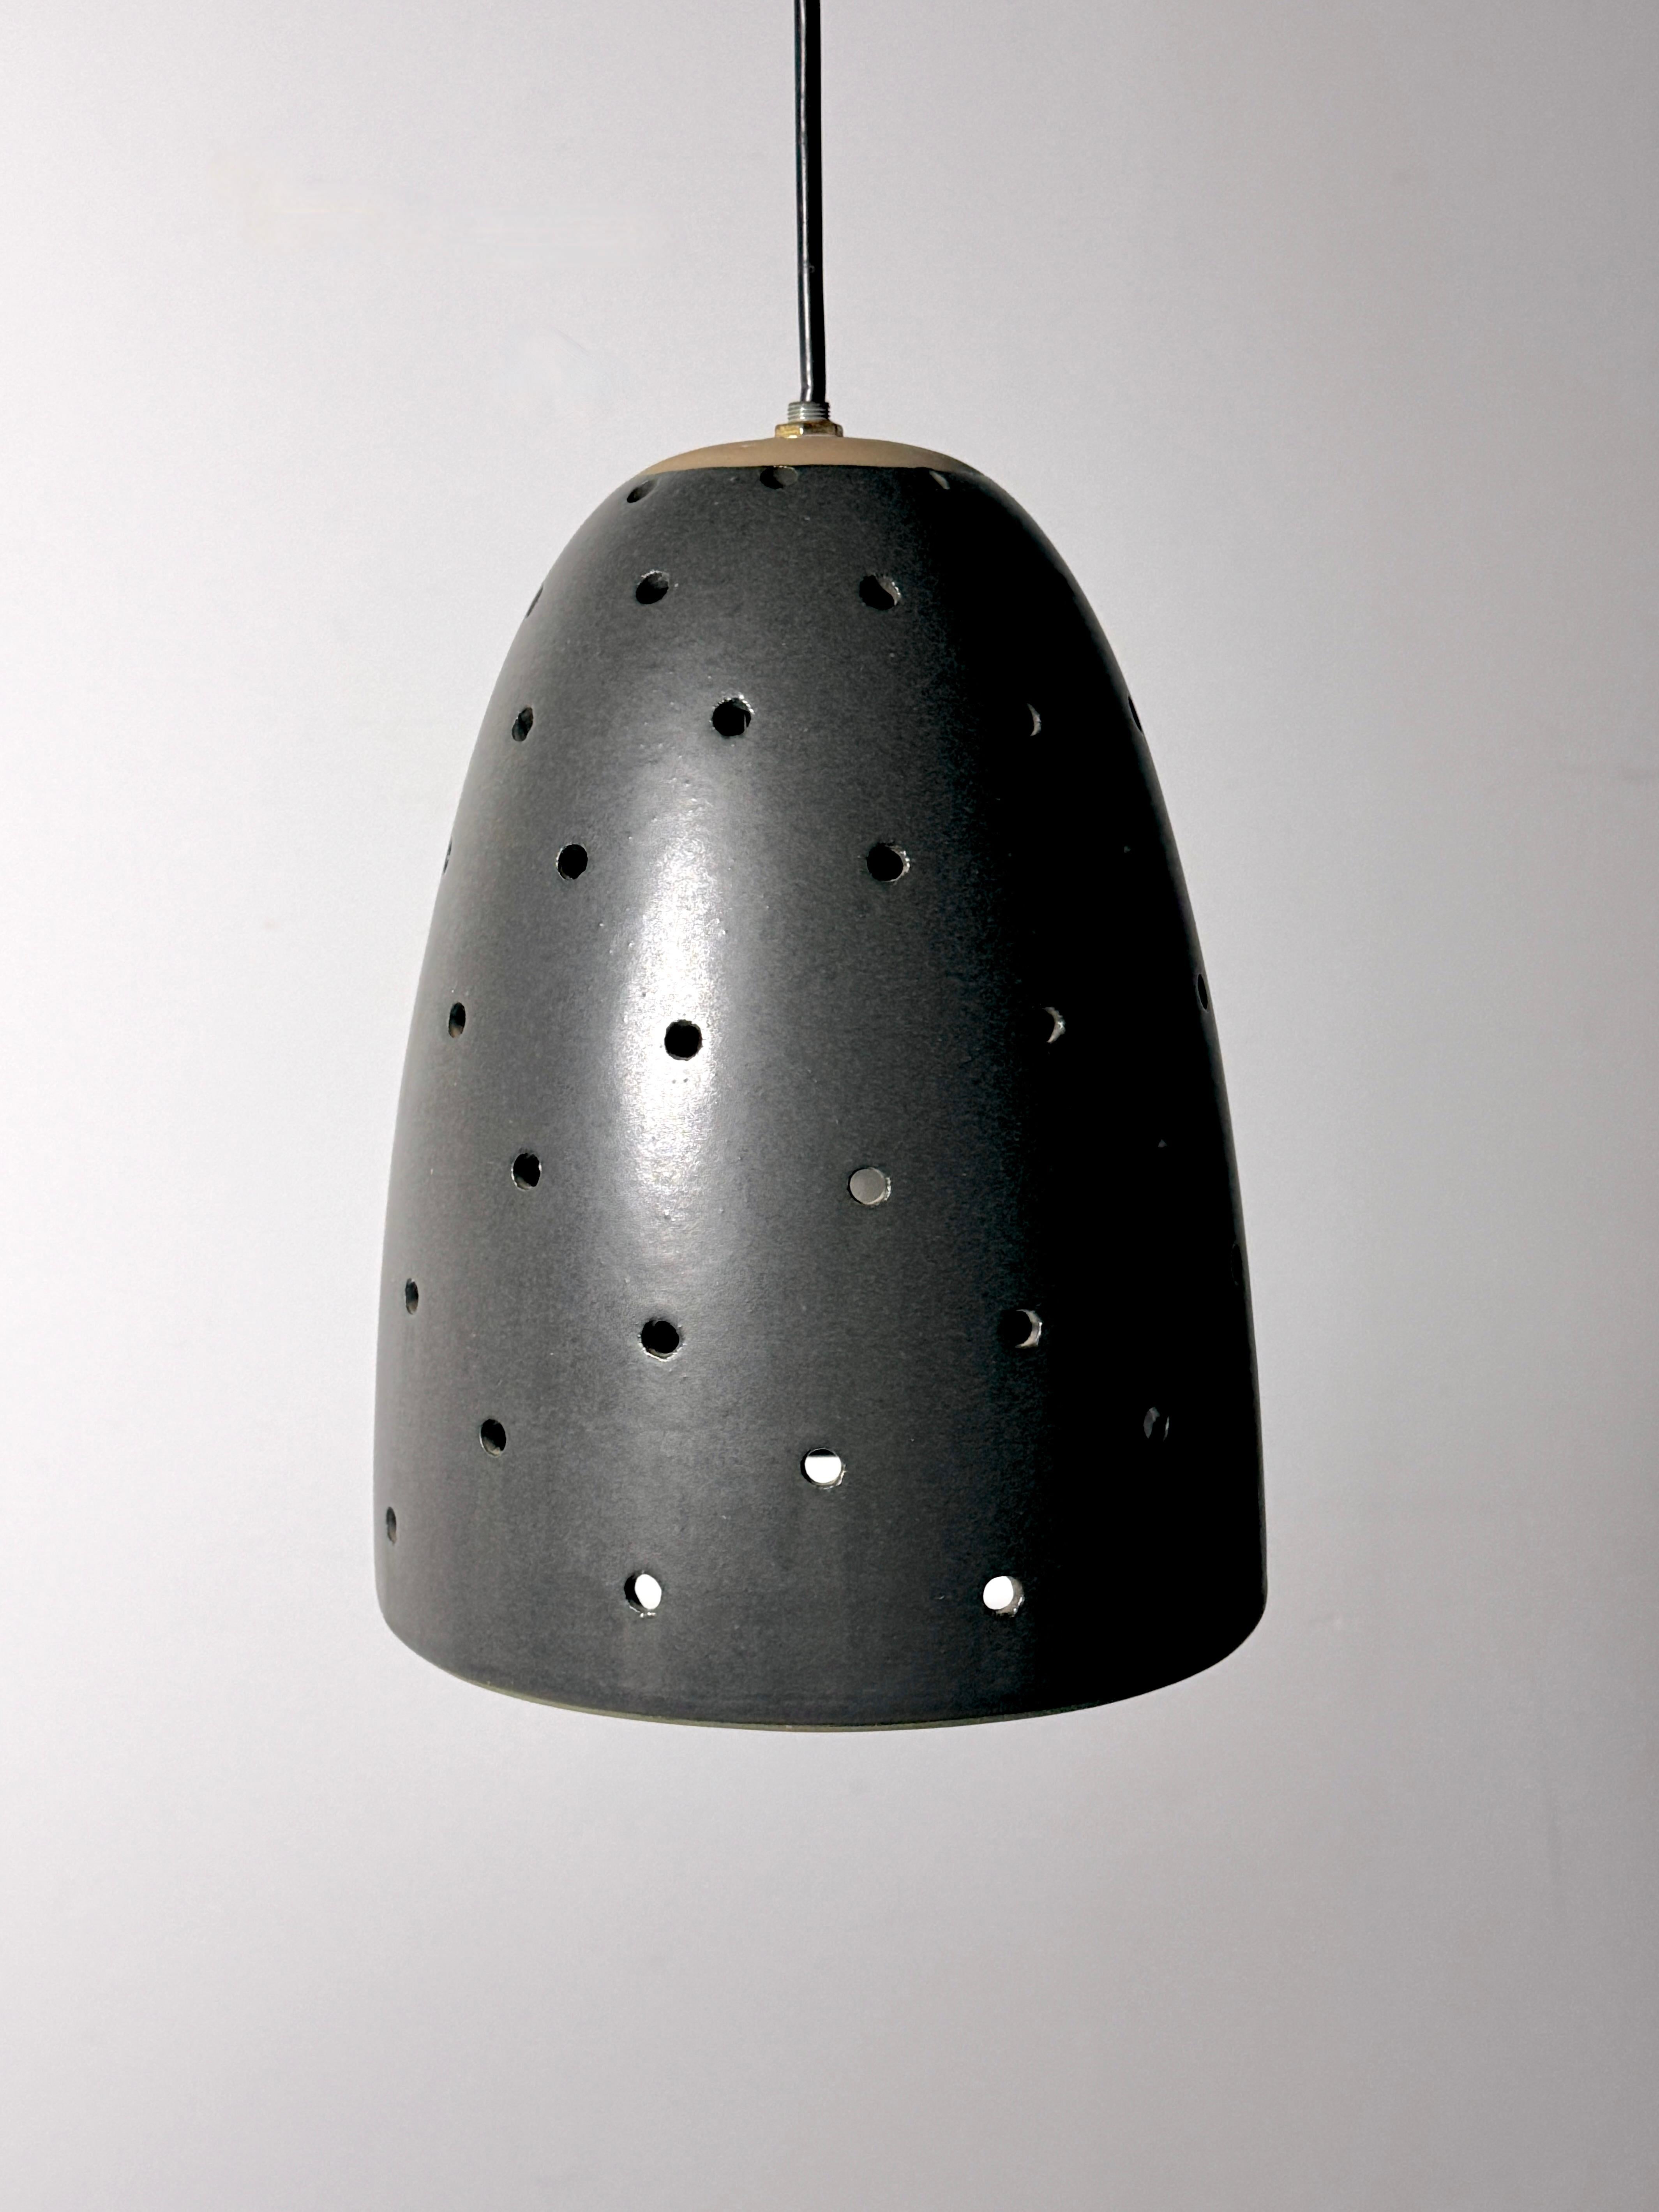 Rare lampe suspendue conçue par Gordon et Jane Martz pour Marshall Studios 1960s

236 moderne en émail noir mat avec des trous perforés pour un motif lumineux doux et enchanteur

Diamètre de 8,25 pouces
Hauteur de 11 pouces 